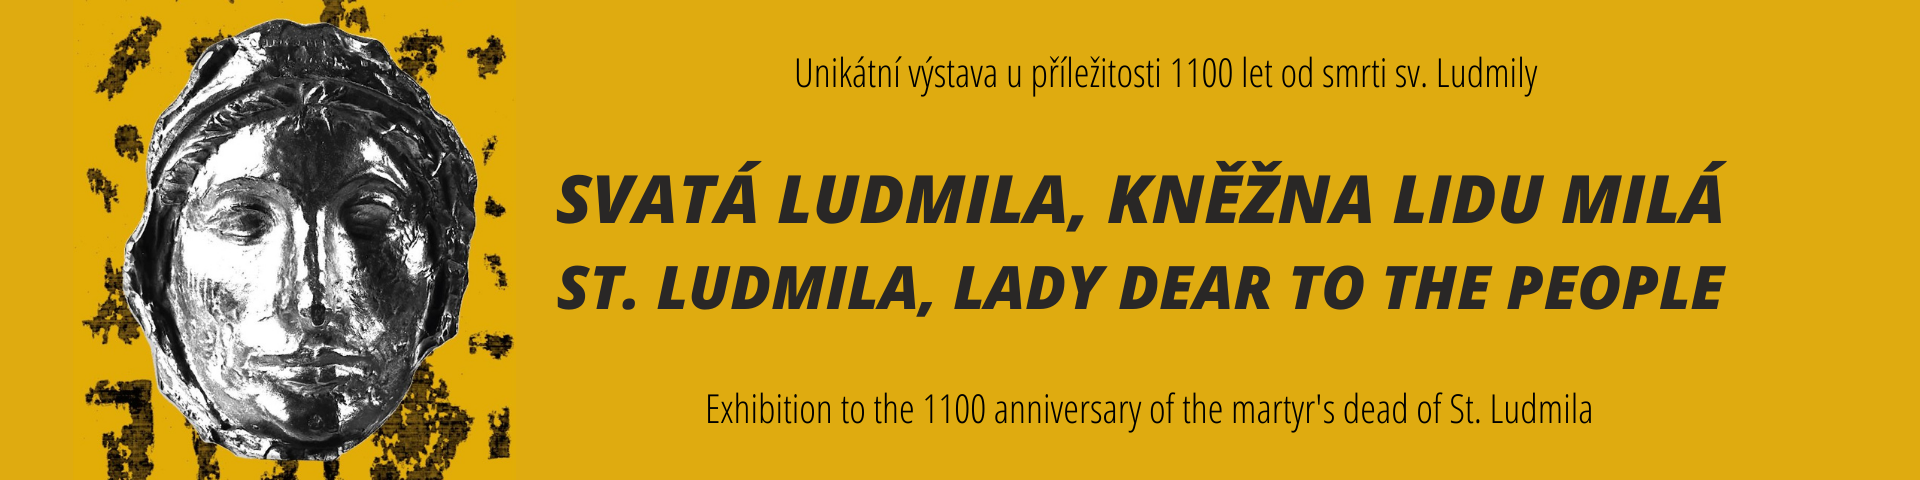 Unikátní výstava u příležitosti 1100 let od smrti sv. ludmily